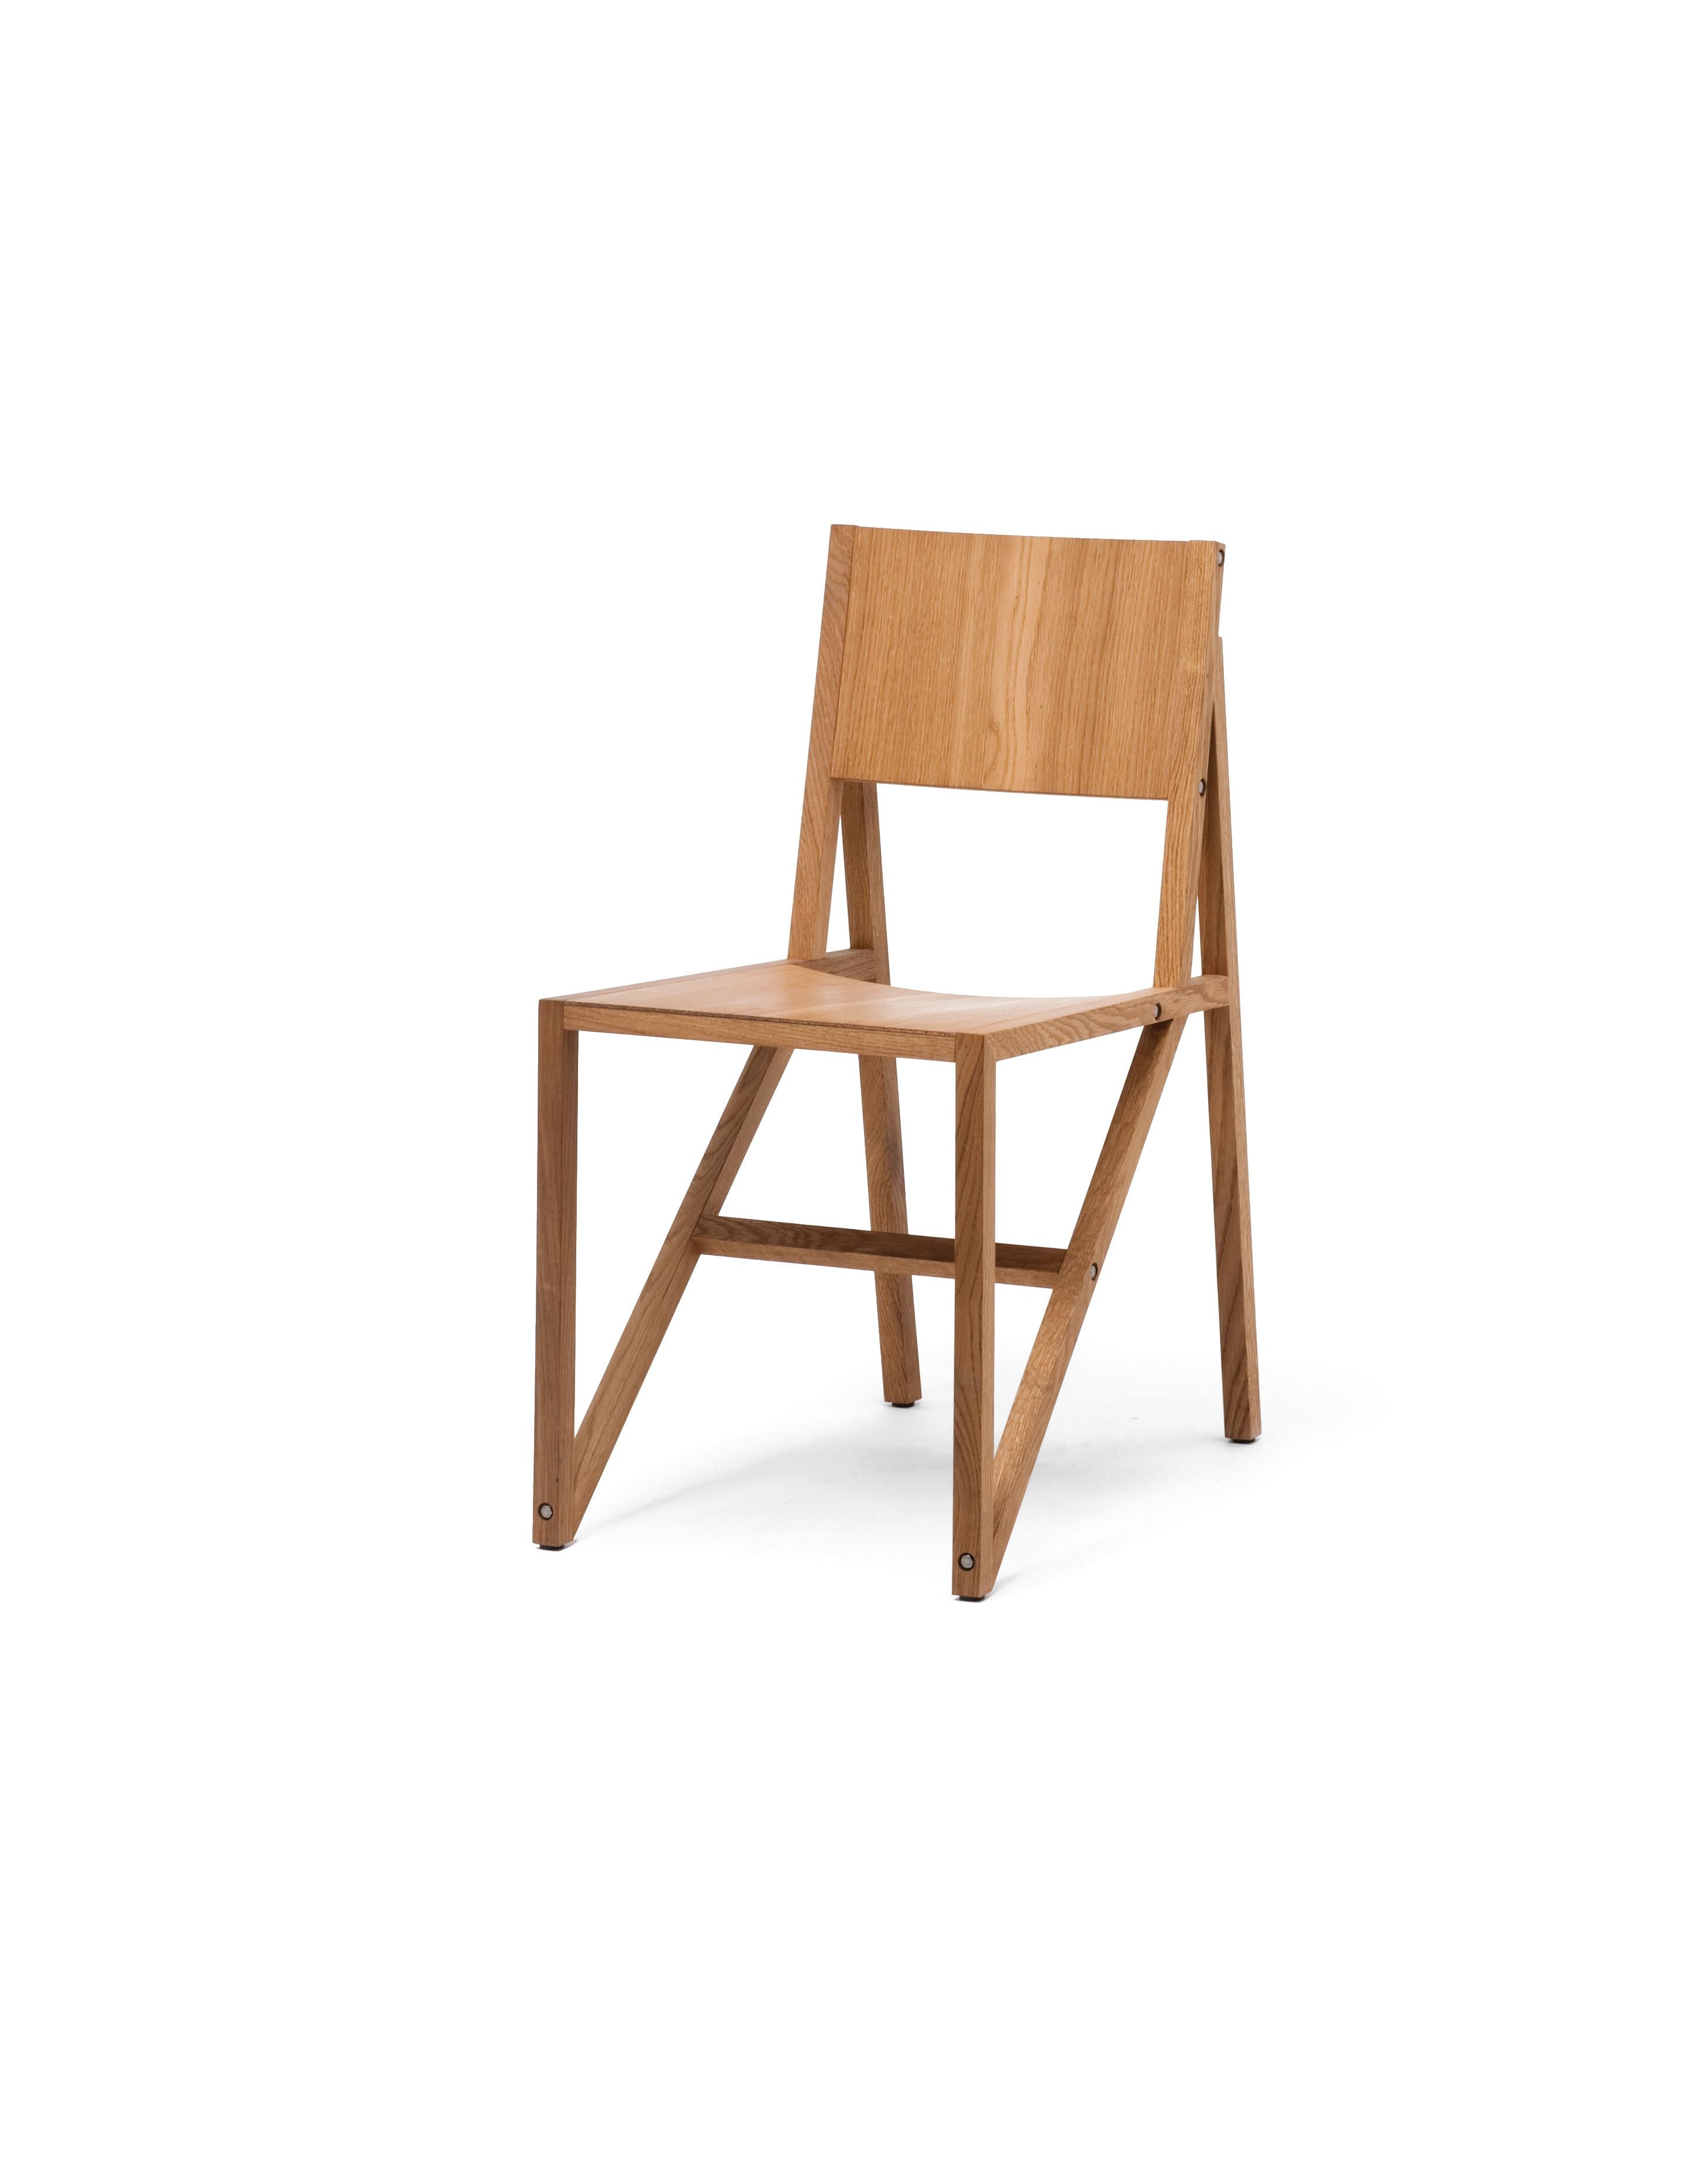 Dieser robuste, leichte Stuhl ist mit guten Proportionen und Sitzkomfort gesegnet. Eine komplexe Studie der Winkel, bei der die geraden Linien der Holzlatten geschickt mit den subtil geschwungenen Sitz- und Auflageflächen in Einklang gebracht